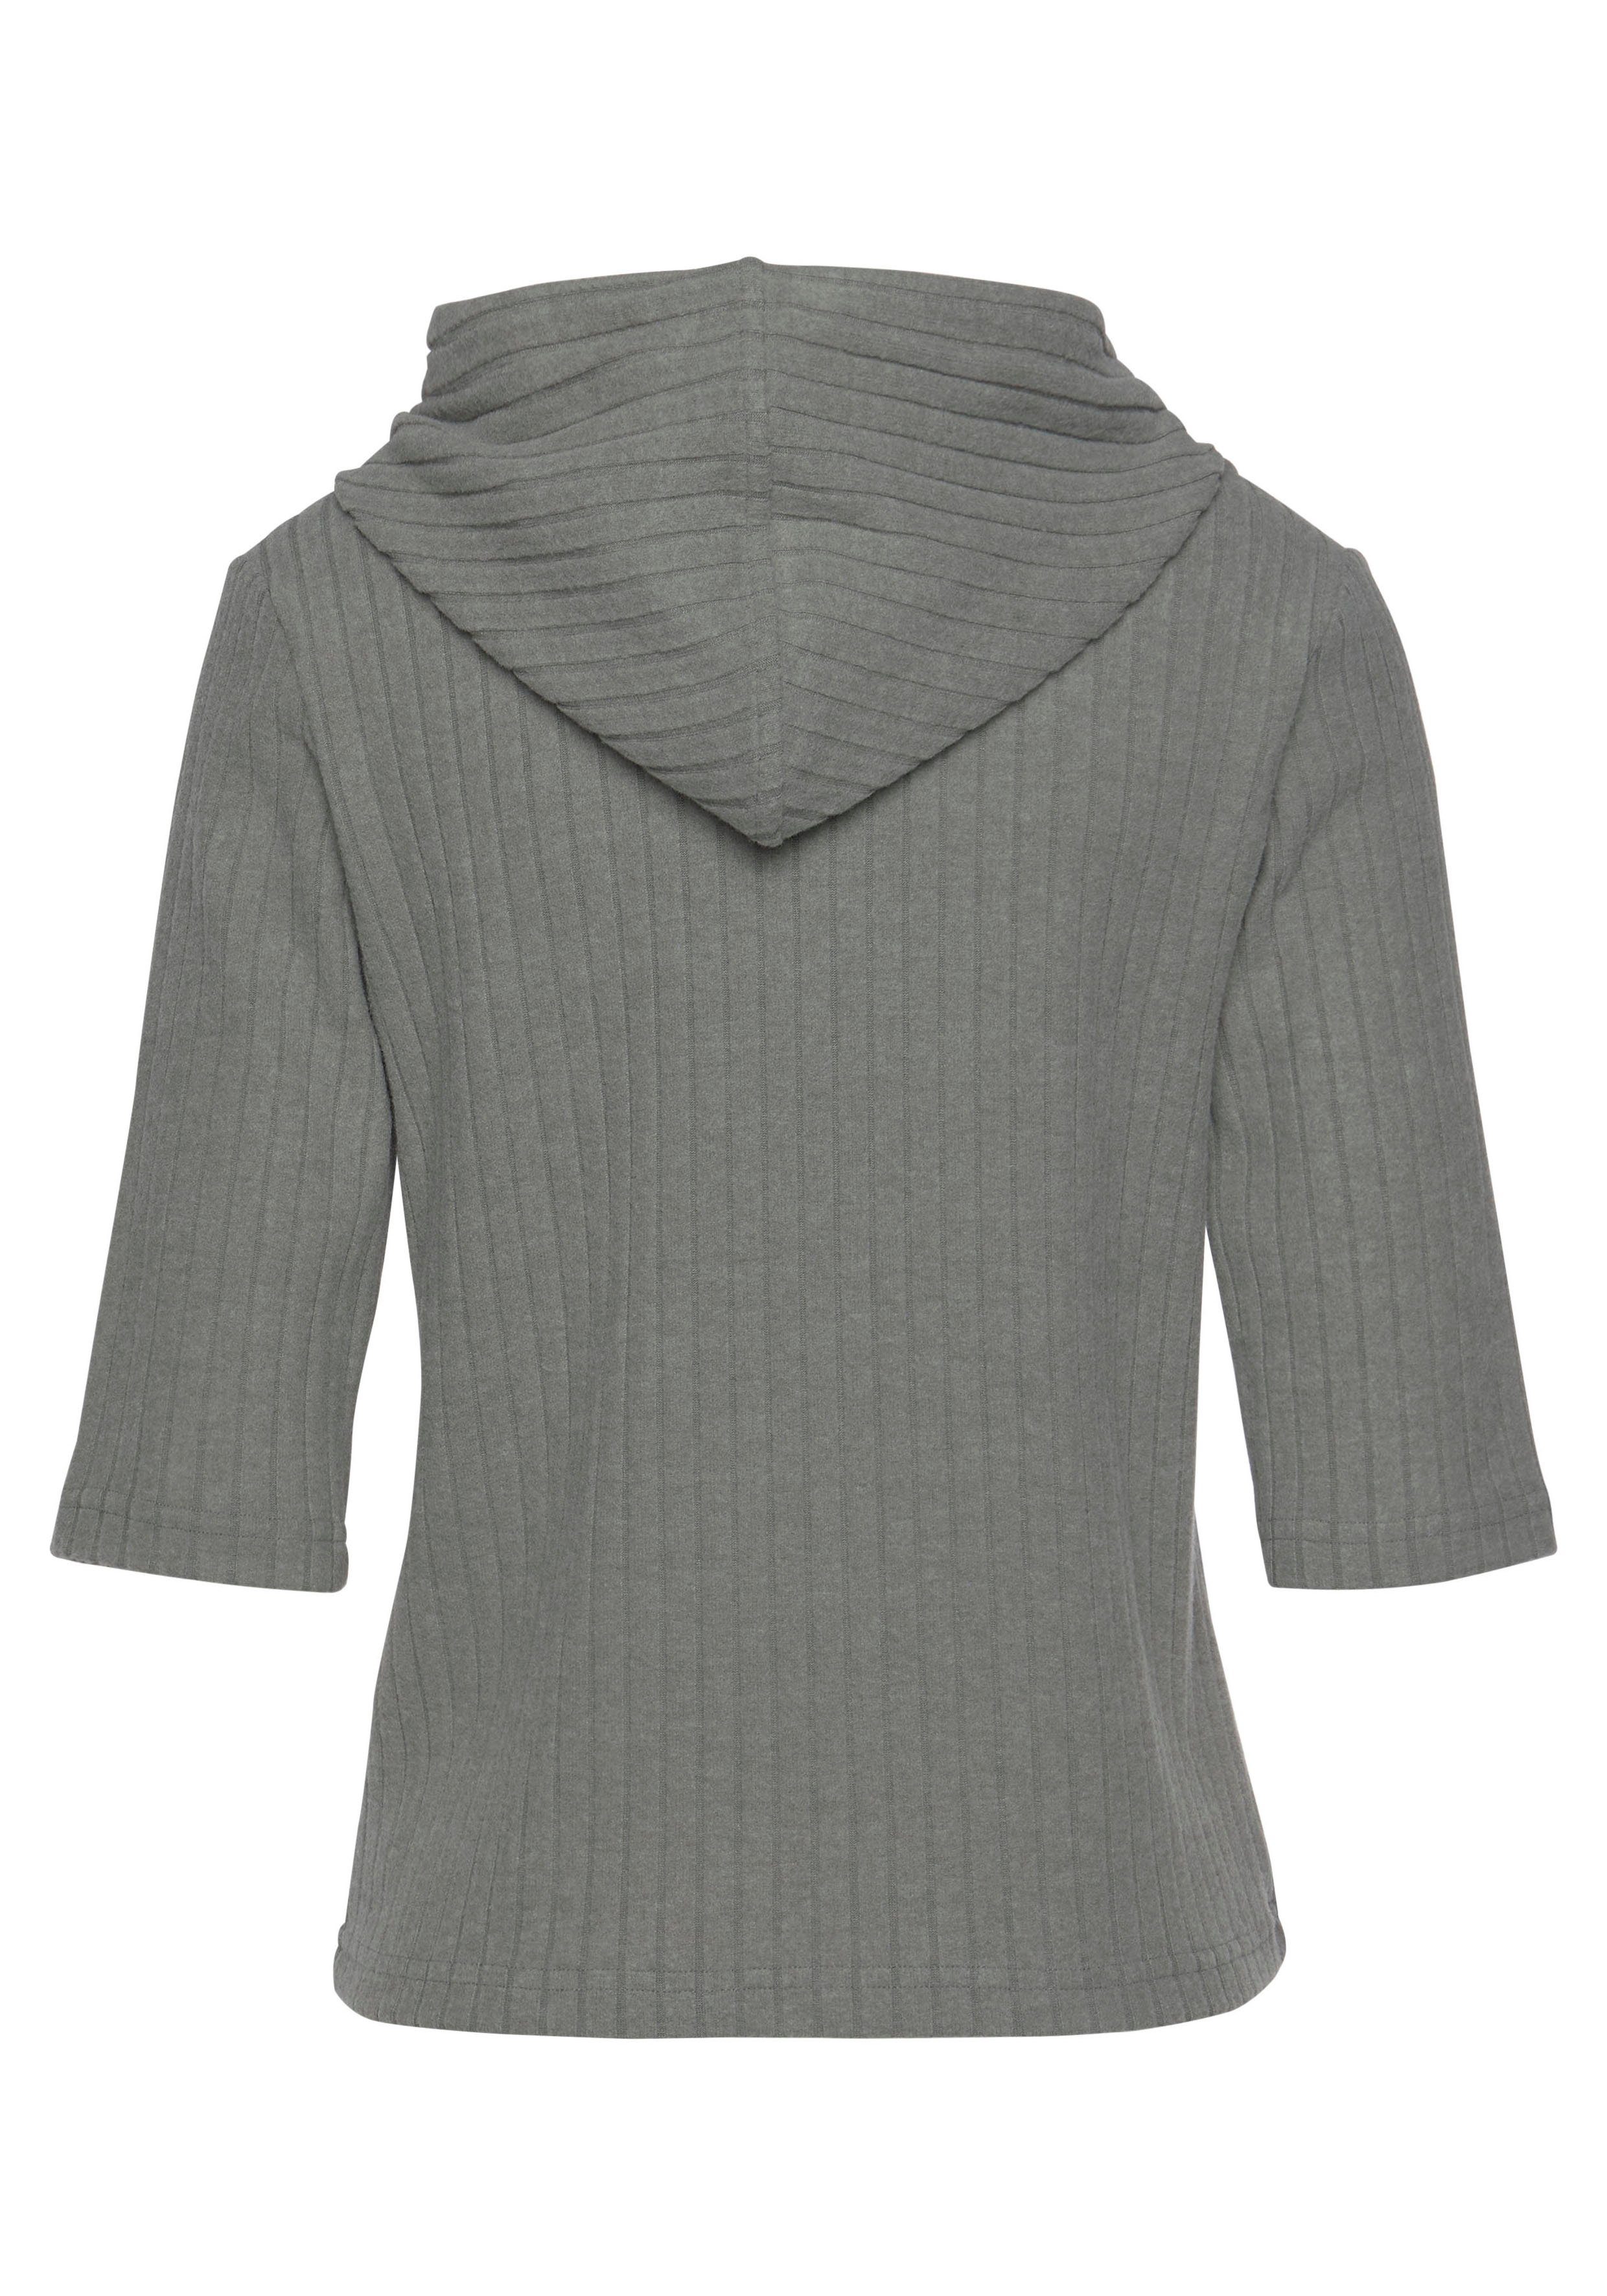 grau Kapuzensweatshirt aus Loungeanzug Rippstrick, nachhaltigem s.Oliver